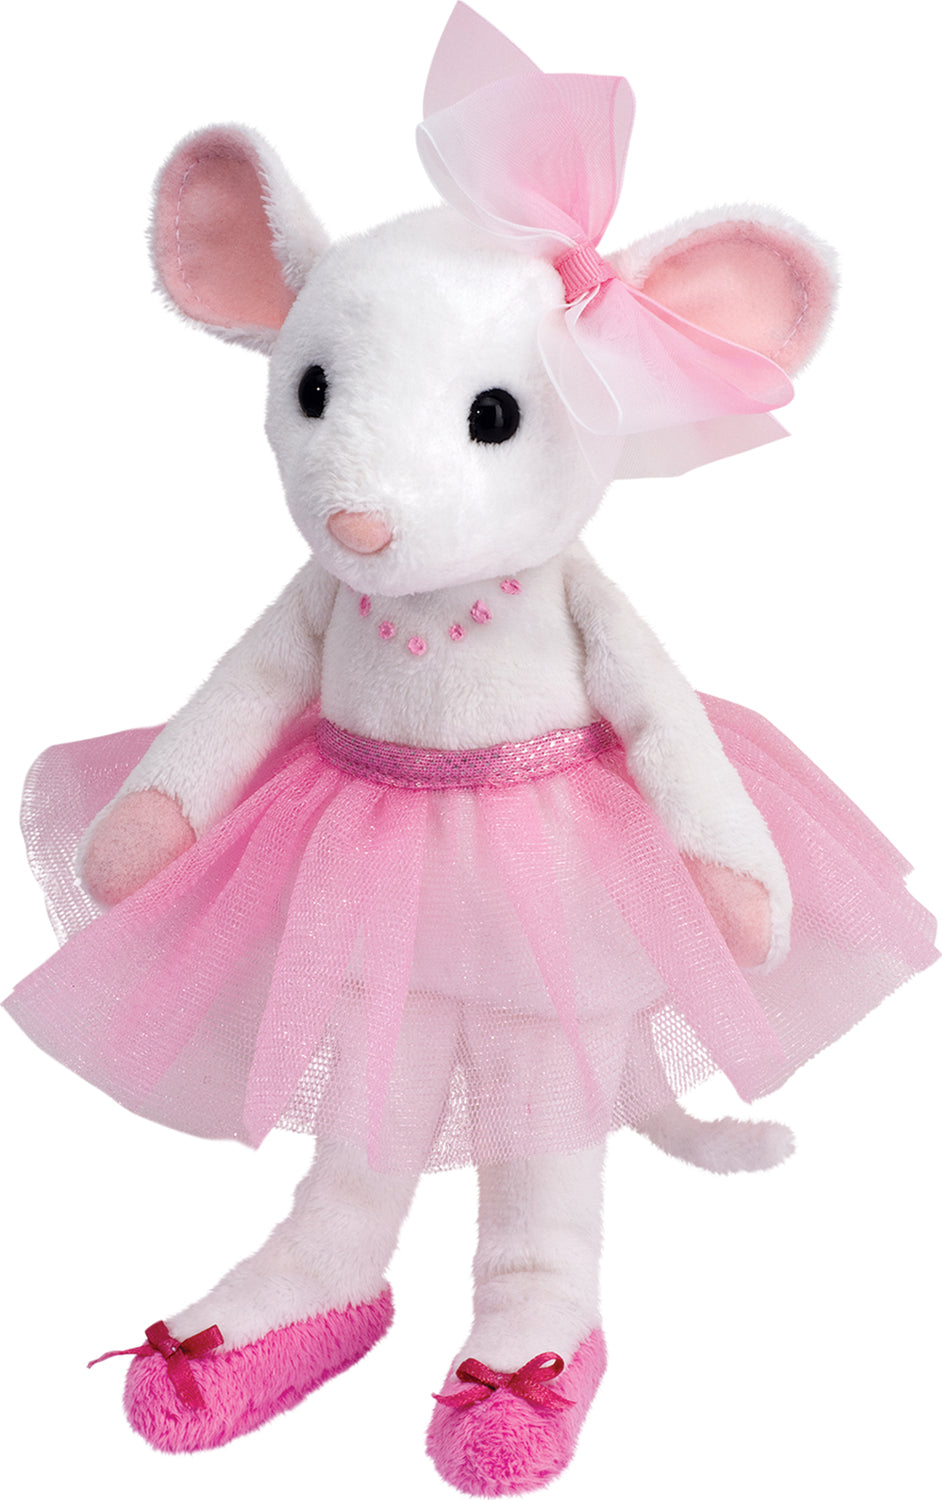 Petunia Ballerina Mouse